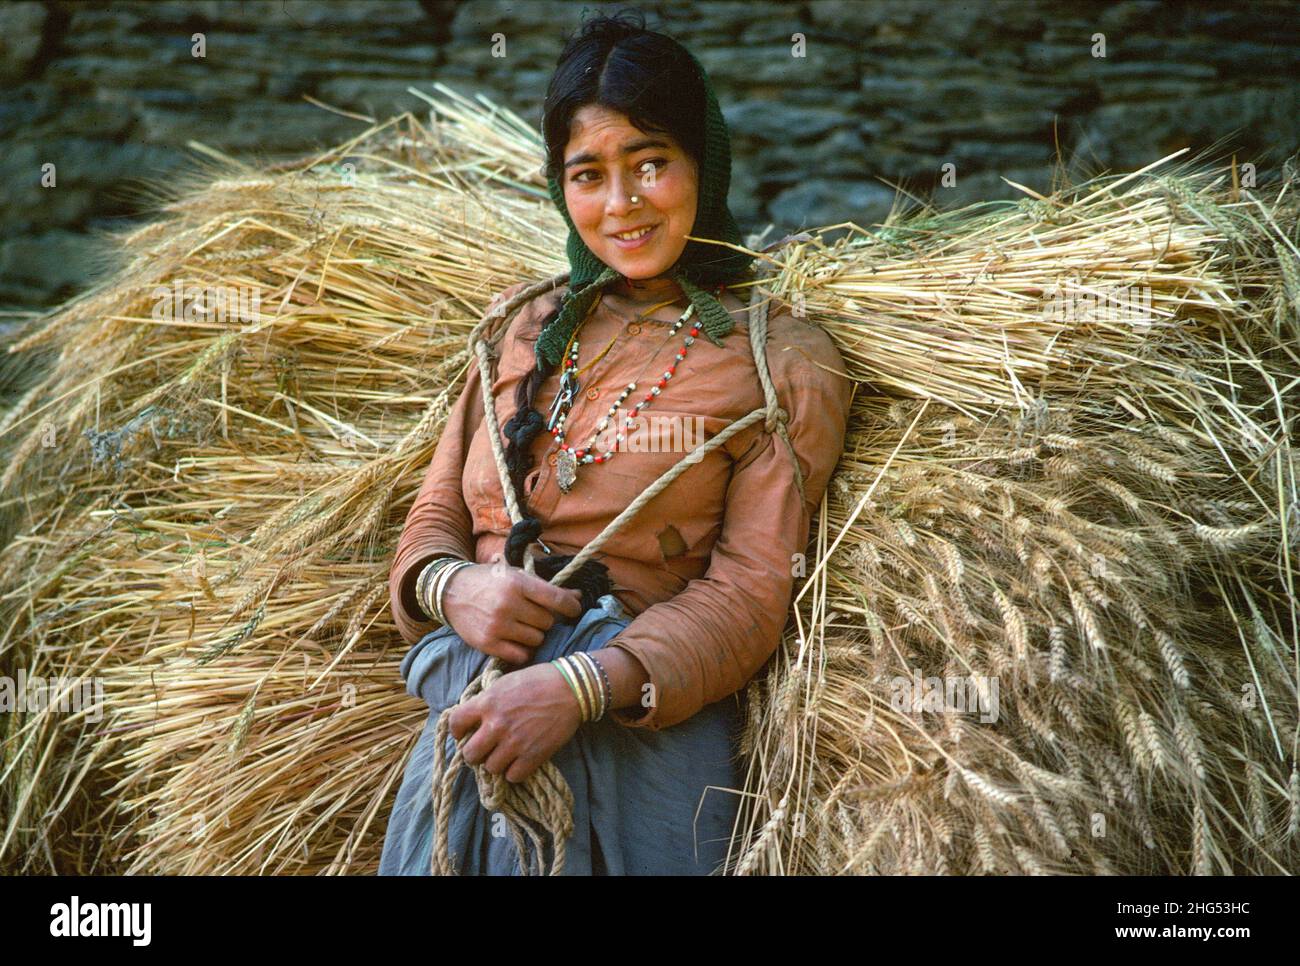 Tímida y sonriente joven de la tribu Jaunsari descansando mientras llevaba poleas de cebada en el momento de la cosecha. Uttarkashi, Garwhal Hima, N. India Foto de stock